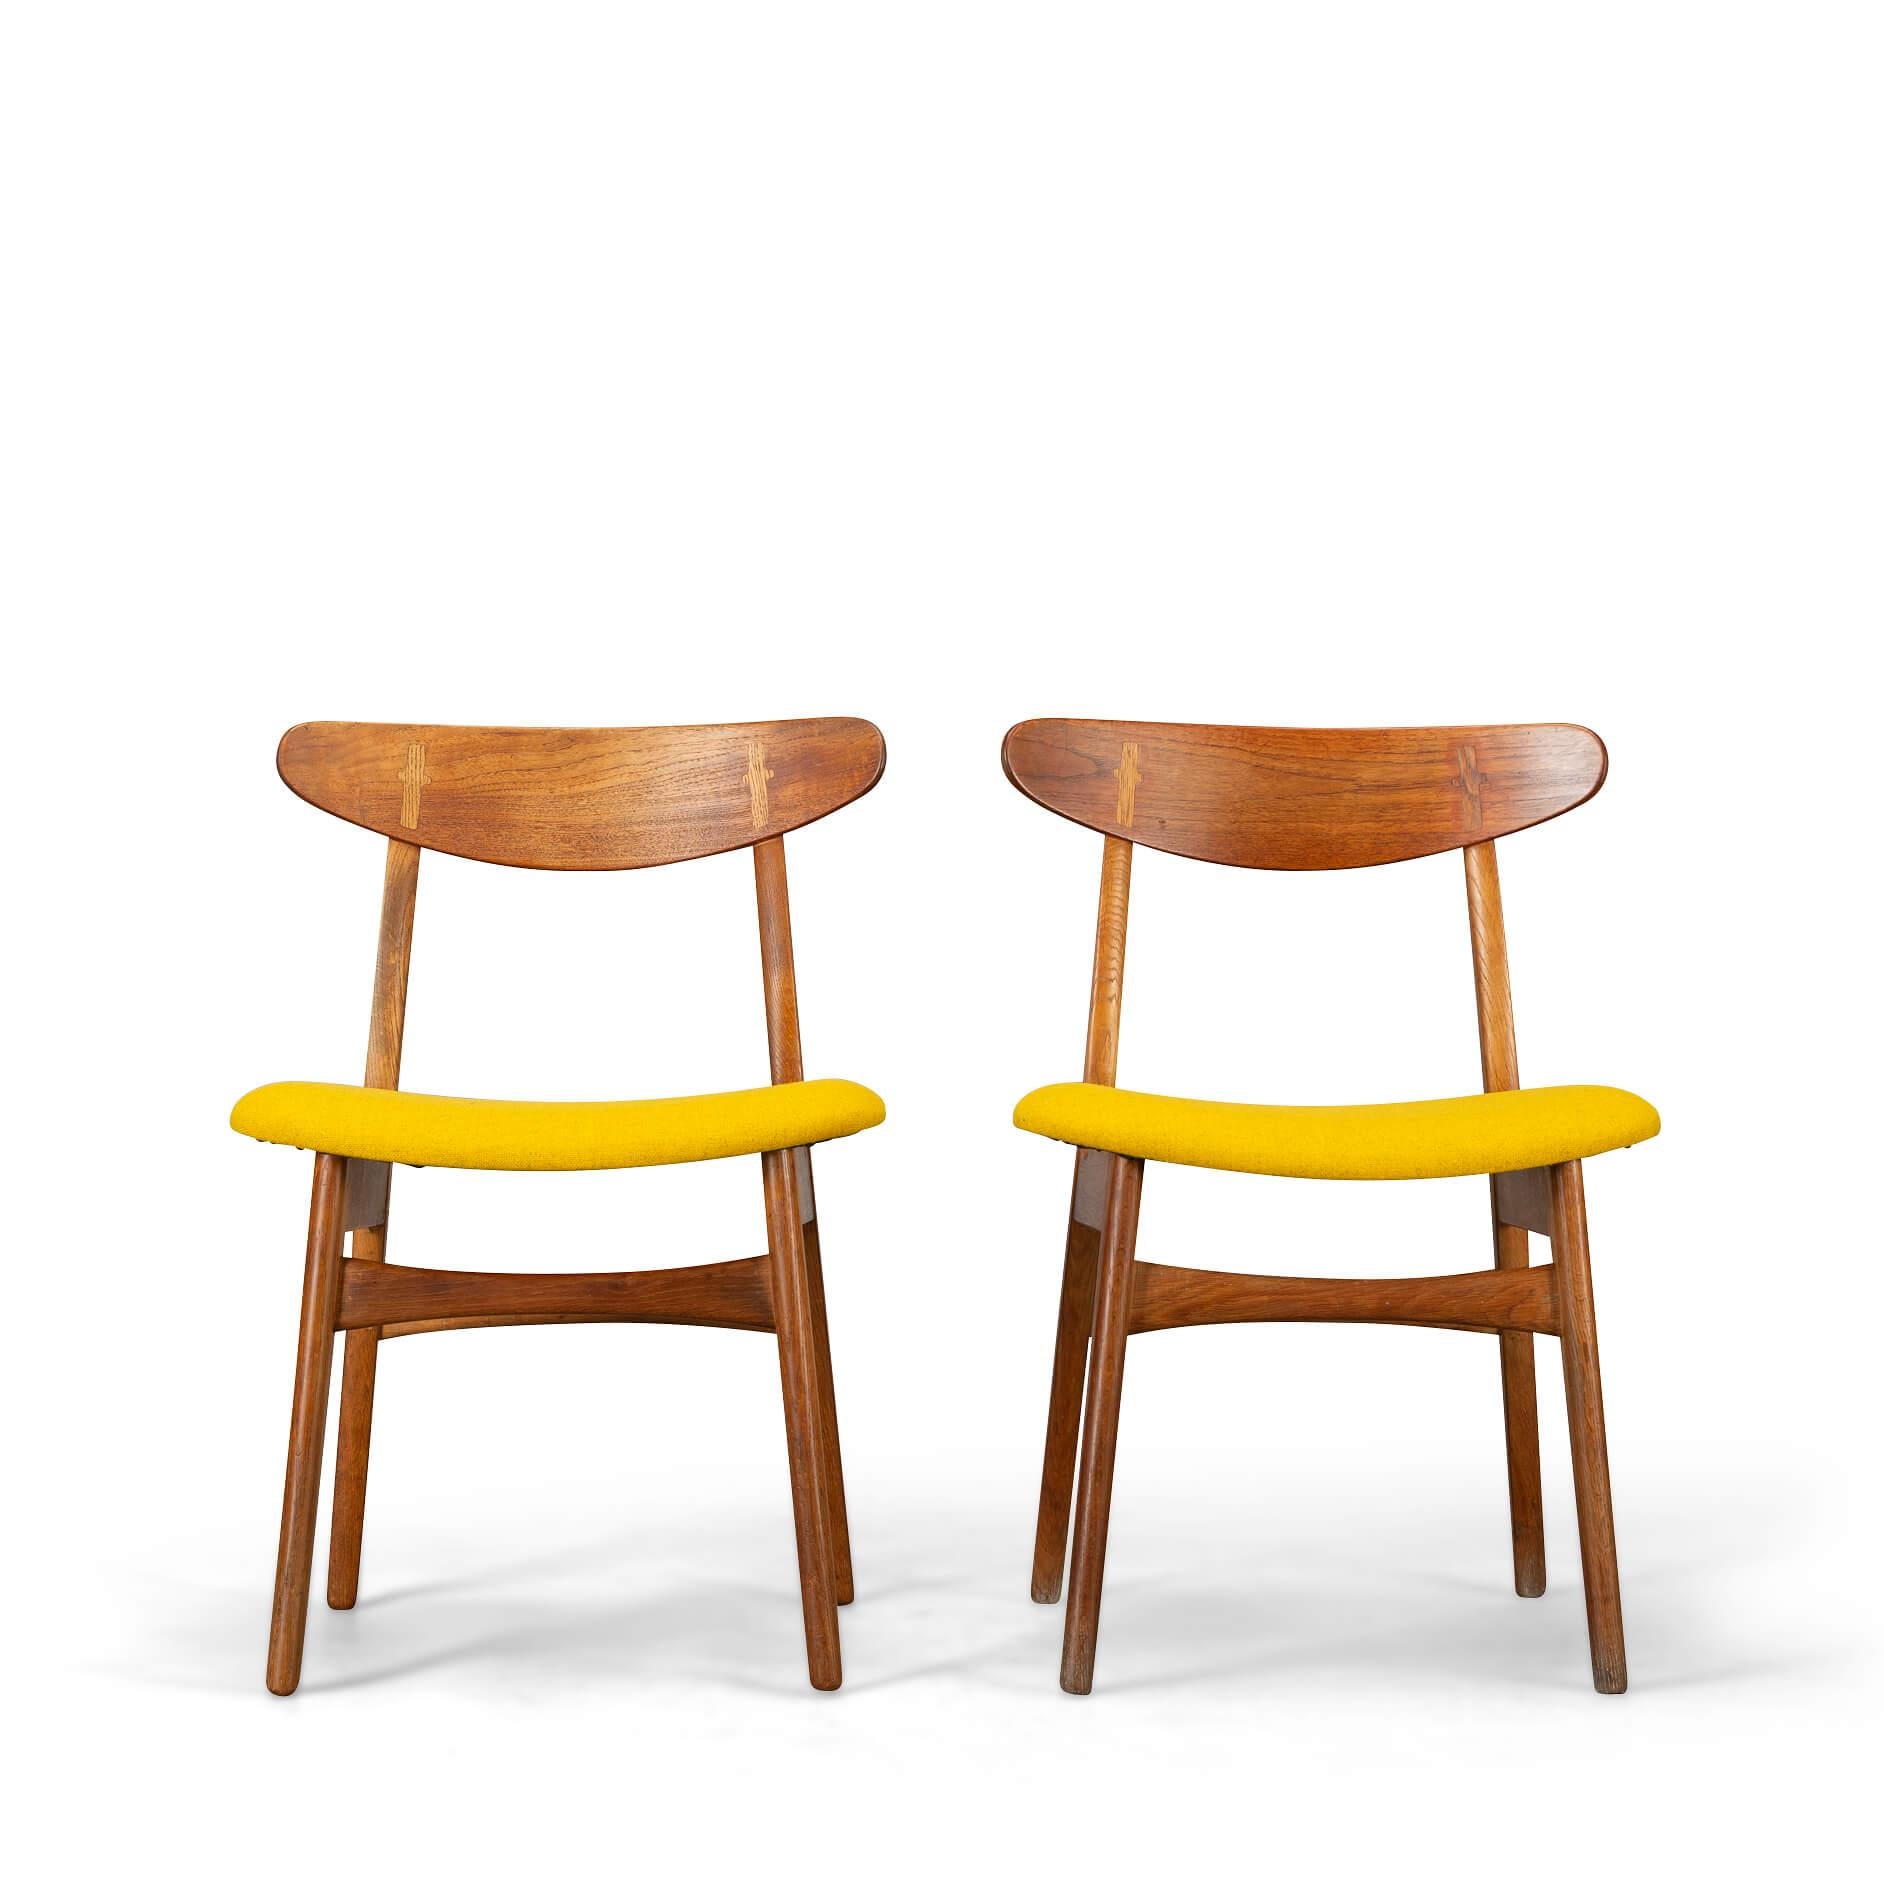 Stühle im Vintage-Design: CH30
Fabelhaftes Design von Hans J. Wegner mit der berühmten kreuzförmigen Holzbefestigungstechnik, die die Rückenlehne verbindet. Andere Teile des Stuhldesigns sind bemerkenswert geradlinig und es wurde nichts repariert,